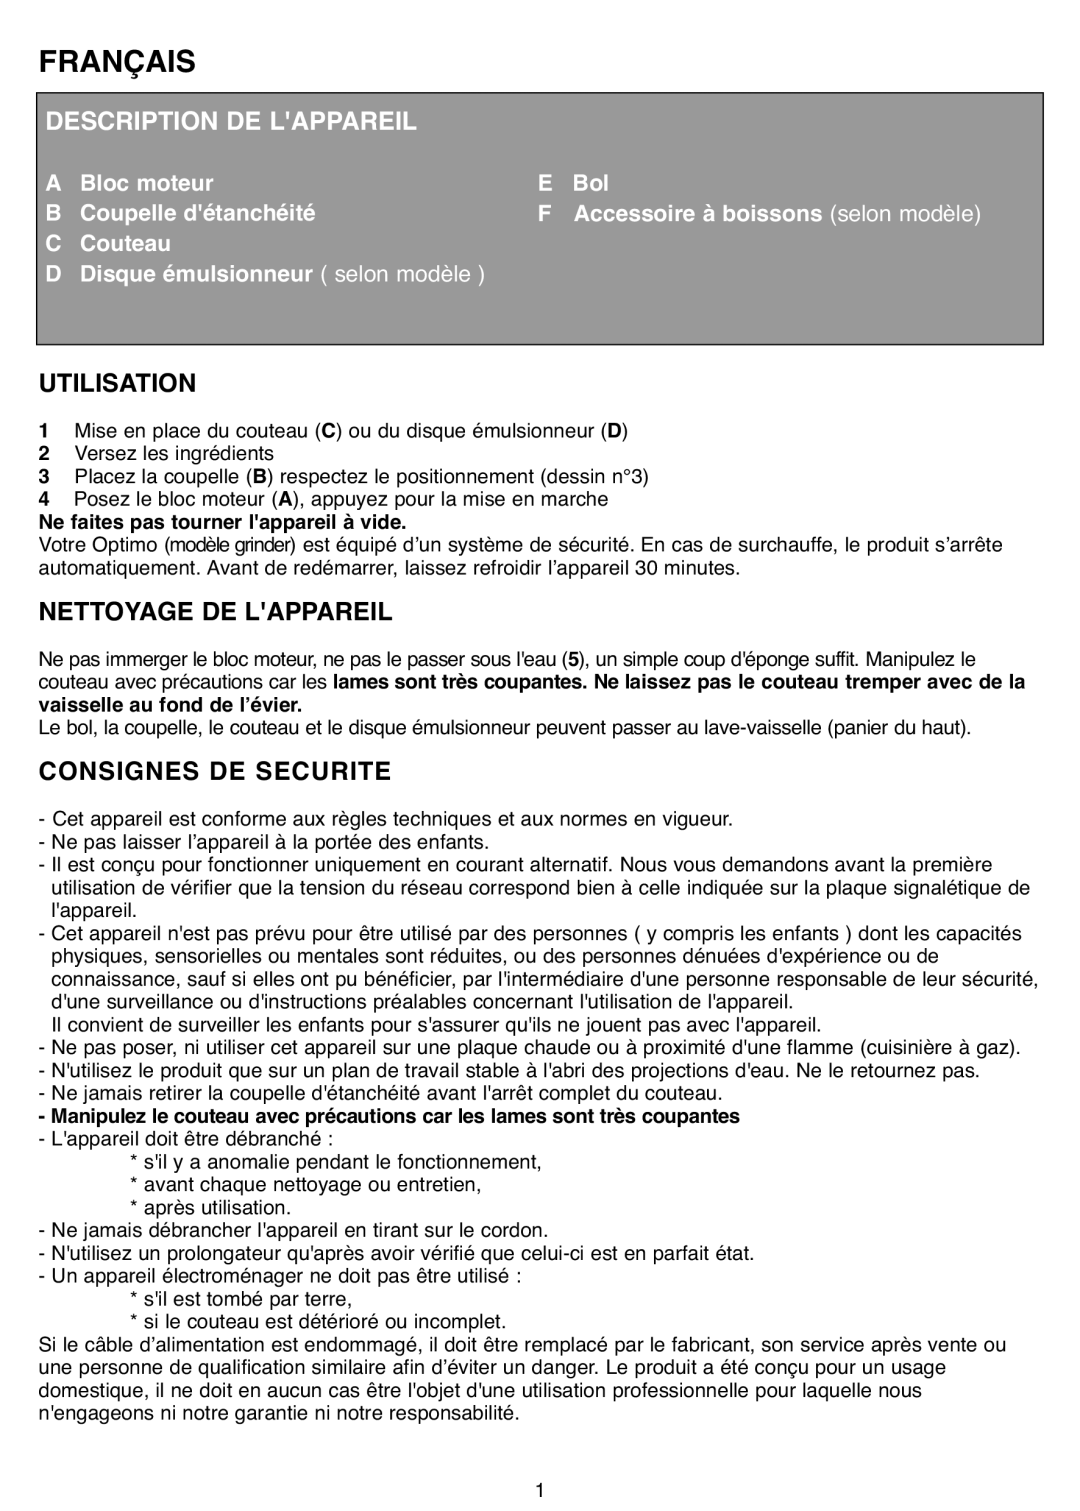 Tefal MB403444, MB403480 Français, Description De Lappareil, Utilisation, Nettoyage De Lappareil, Consignes De Securite 